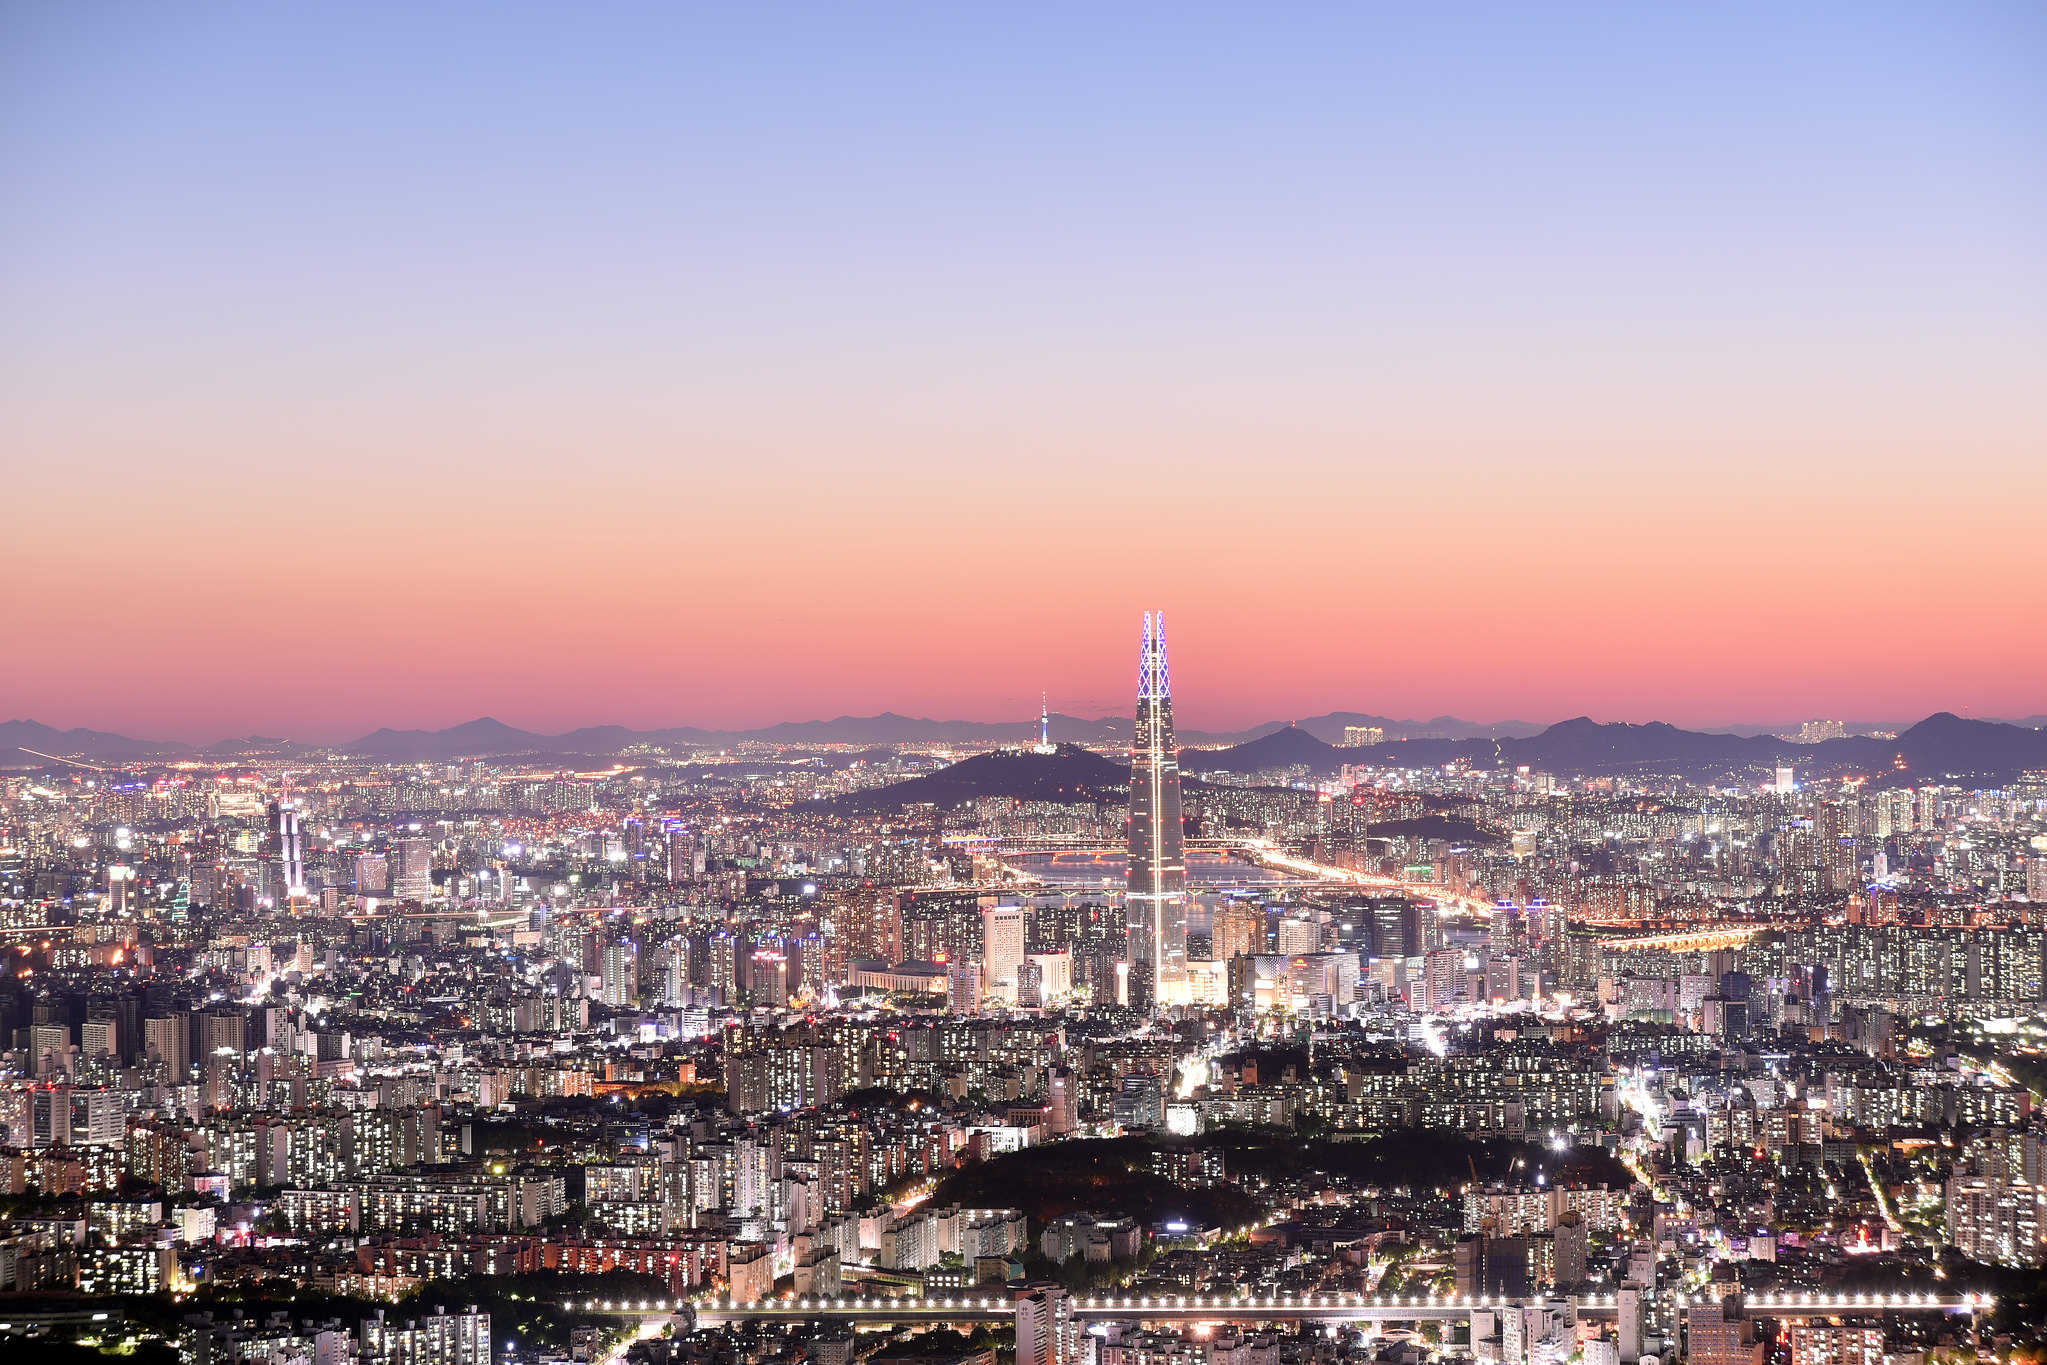 Seoul then and now - Seoul, South Korea skyline